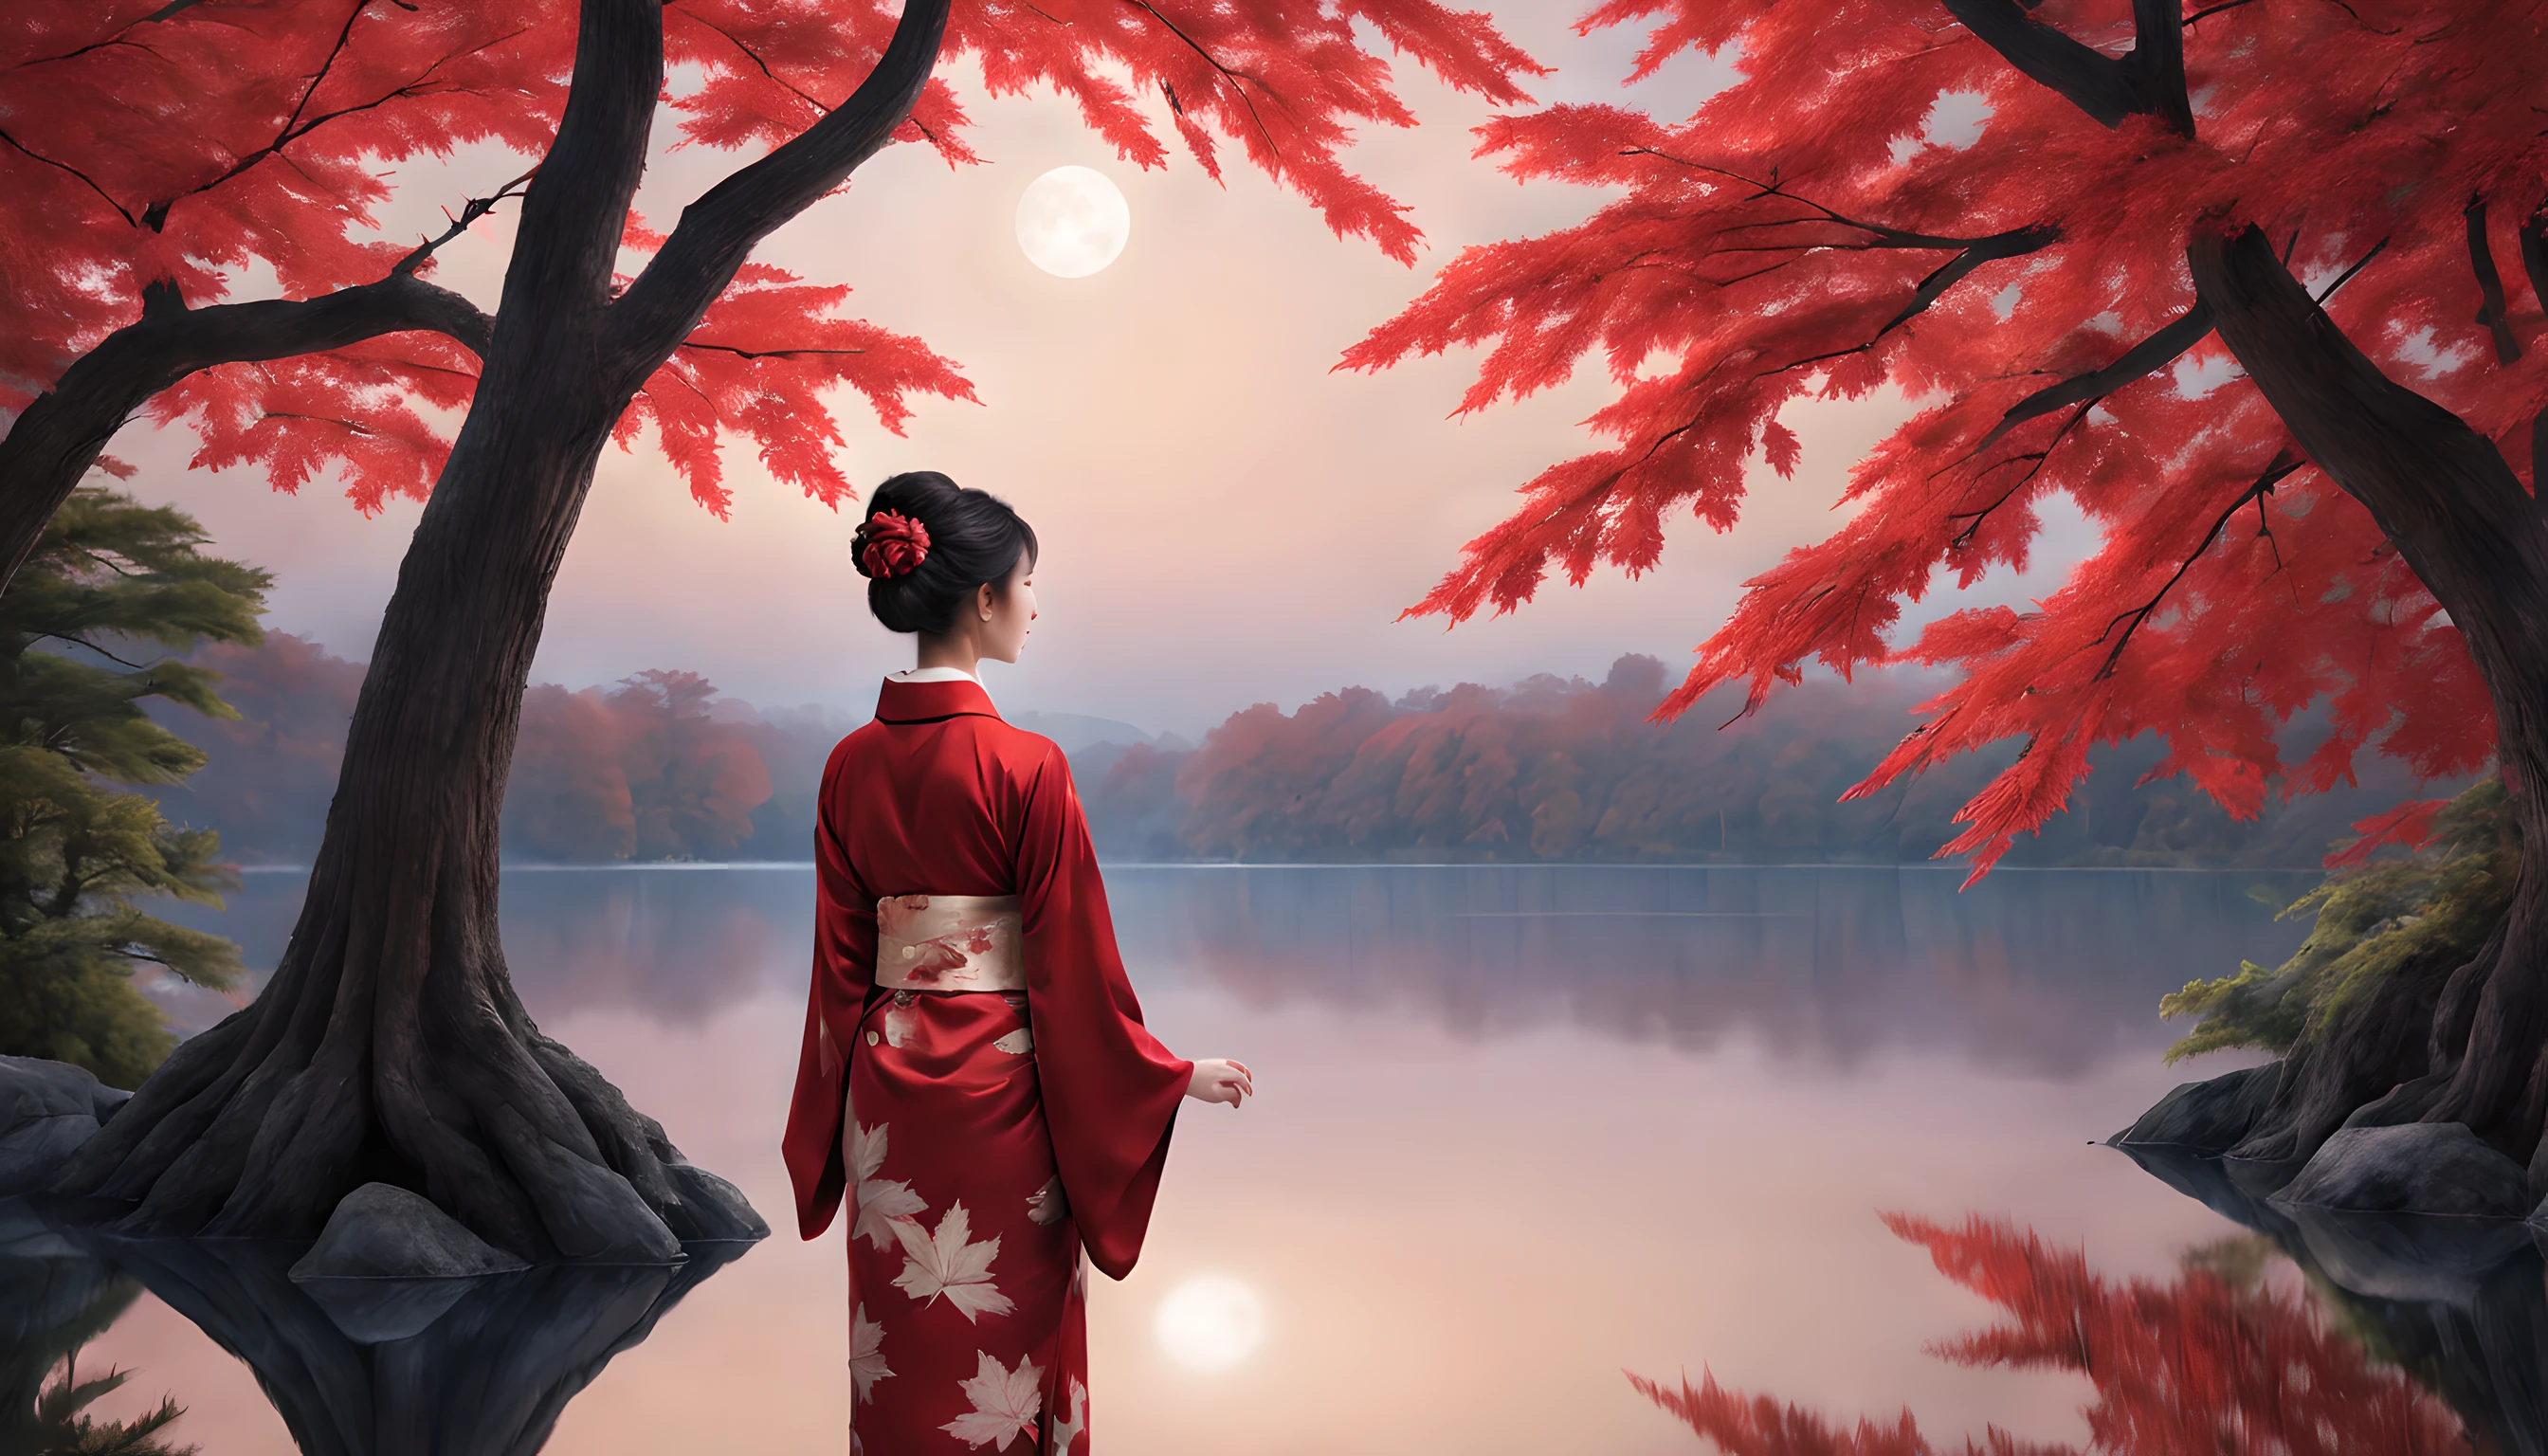 "단풍잎의 불타는 듯한 빛깔로 둘러싸인 고요한 연못을 특징으로 하는 매혹적인 밤의 풍경을 구성해보세요.. 구도는 단풍잎과 근처에 서 있는 장엄한 단풍나무의 탁월함을 강조해야 합니다..

전경에서, 40대 일본 여성이 우아하게 서 있다, 선명한 빨간색 기모노를 입은. 기모노는 그녀의 우아함을 더욱 돋보이게 합니다., 그리고 그녀의 아름다움은 달빛 아래서 빛난다. 그녀는 시대를 초월한 매력의 비전입니다, 계절의 본질을 포착하다.

여자는 반짝이는 연못을 바라보고 있다, 단풍잎이 수면에 반사되어 춤추는 곳. 그녀의 표정은 고요한 사색 중 하나입니다, 그녀가 밤의 고요한 아름다움에 빠져드는 동안.

배경은 웅장한 단풍나무를 보여줍니다., 달빛을 받은 듯한 찬란한 잎으로 장식된 가지들. 연못은 천상의 풍경을 반영합니다., 순간의 매력을 더하다.

전체적인 구성은 자연의 아름다움에 대한 평온함과 존경심을 불러일으켜야 합니다.. 여성의 매혹적인 아름다움과 단풍잎의 광채가 이 매혹적인 가을 풍경의 중심이 되도록 하세요.."